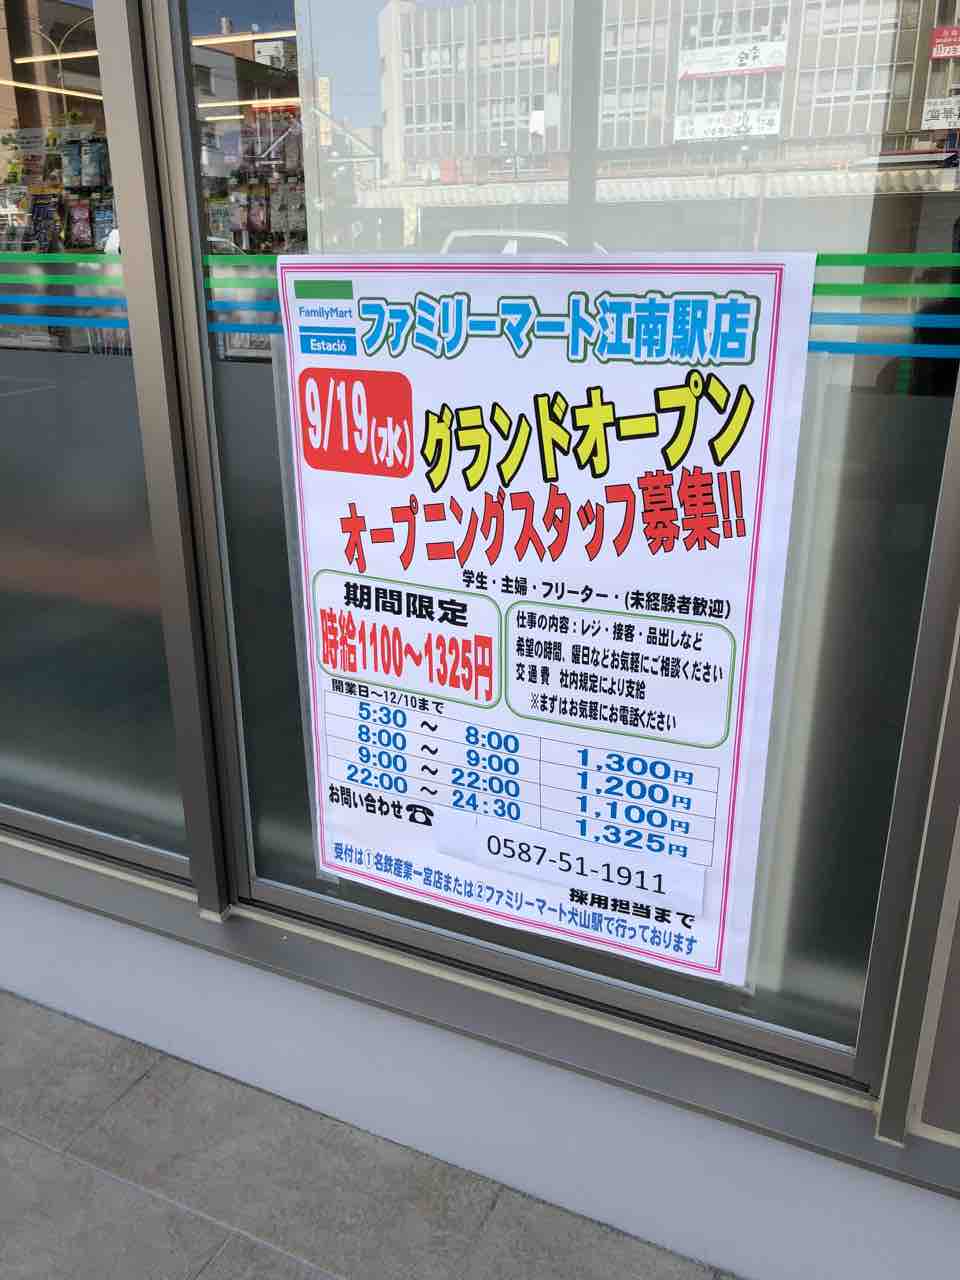 『ファミリーマート エスタシオ江南駅店』